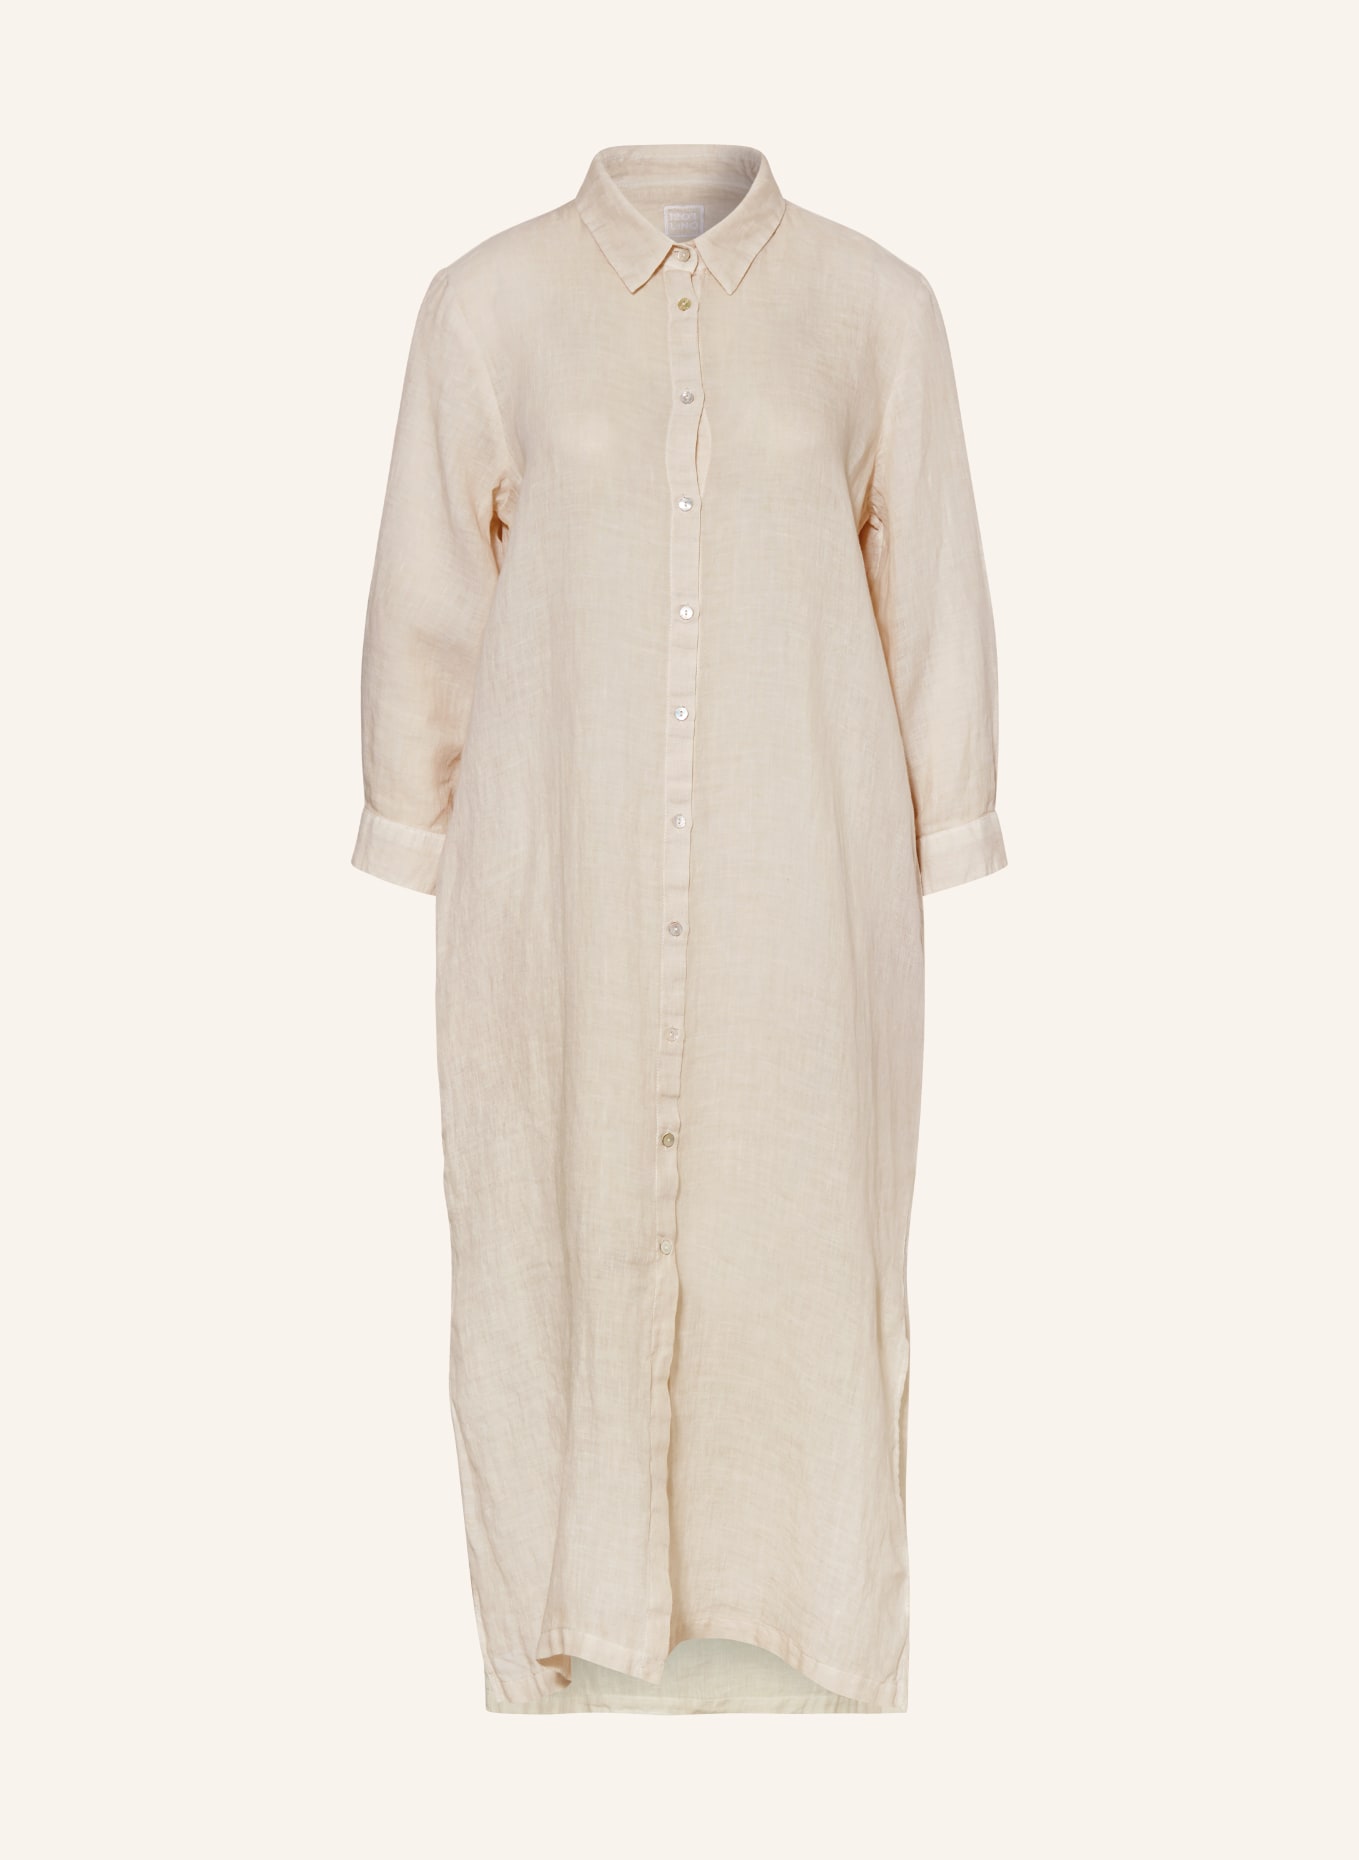 120%lino Beach dress made of linen, Color: CREAM (Image 1)